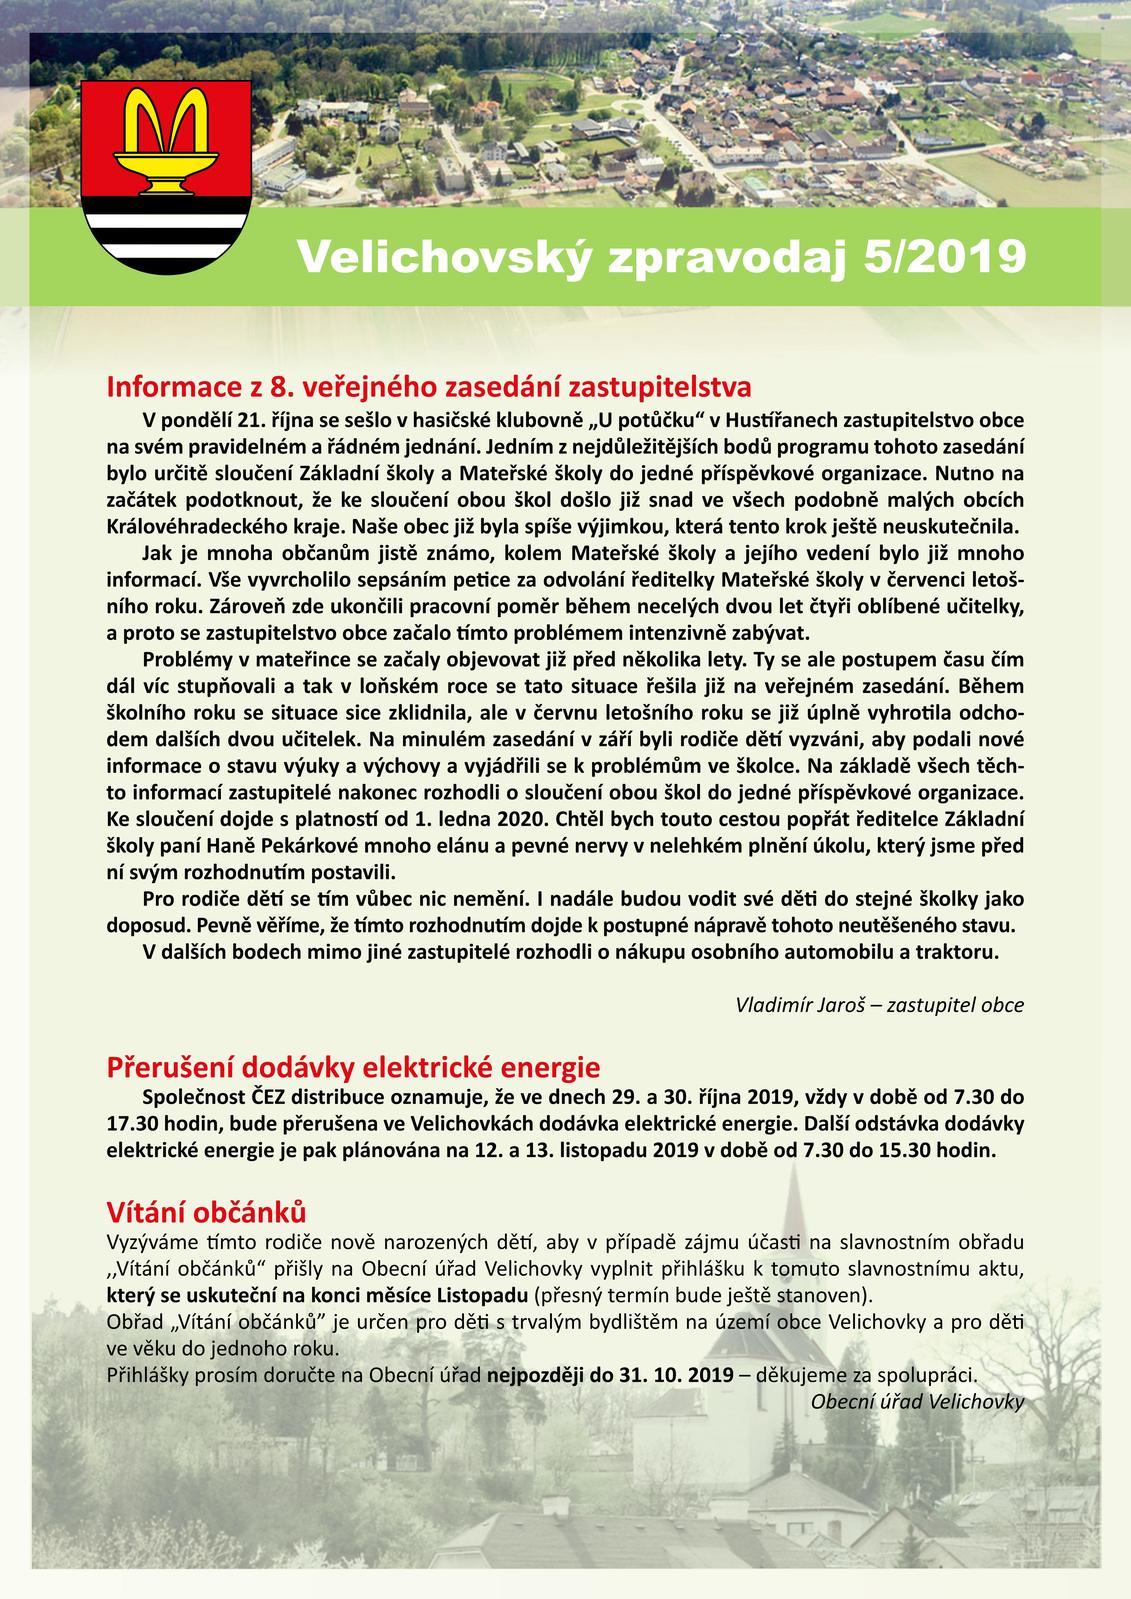 Velichovský zpravodaj 05-2019